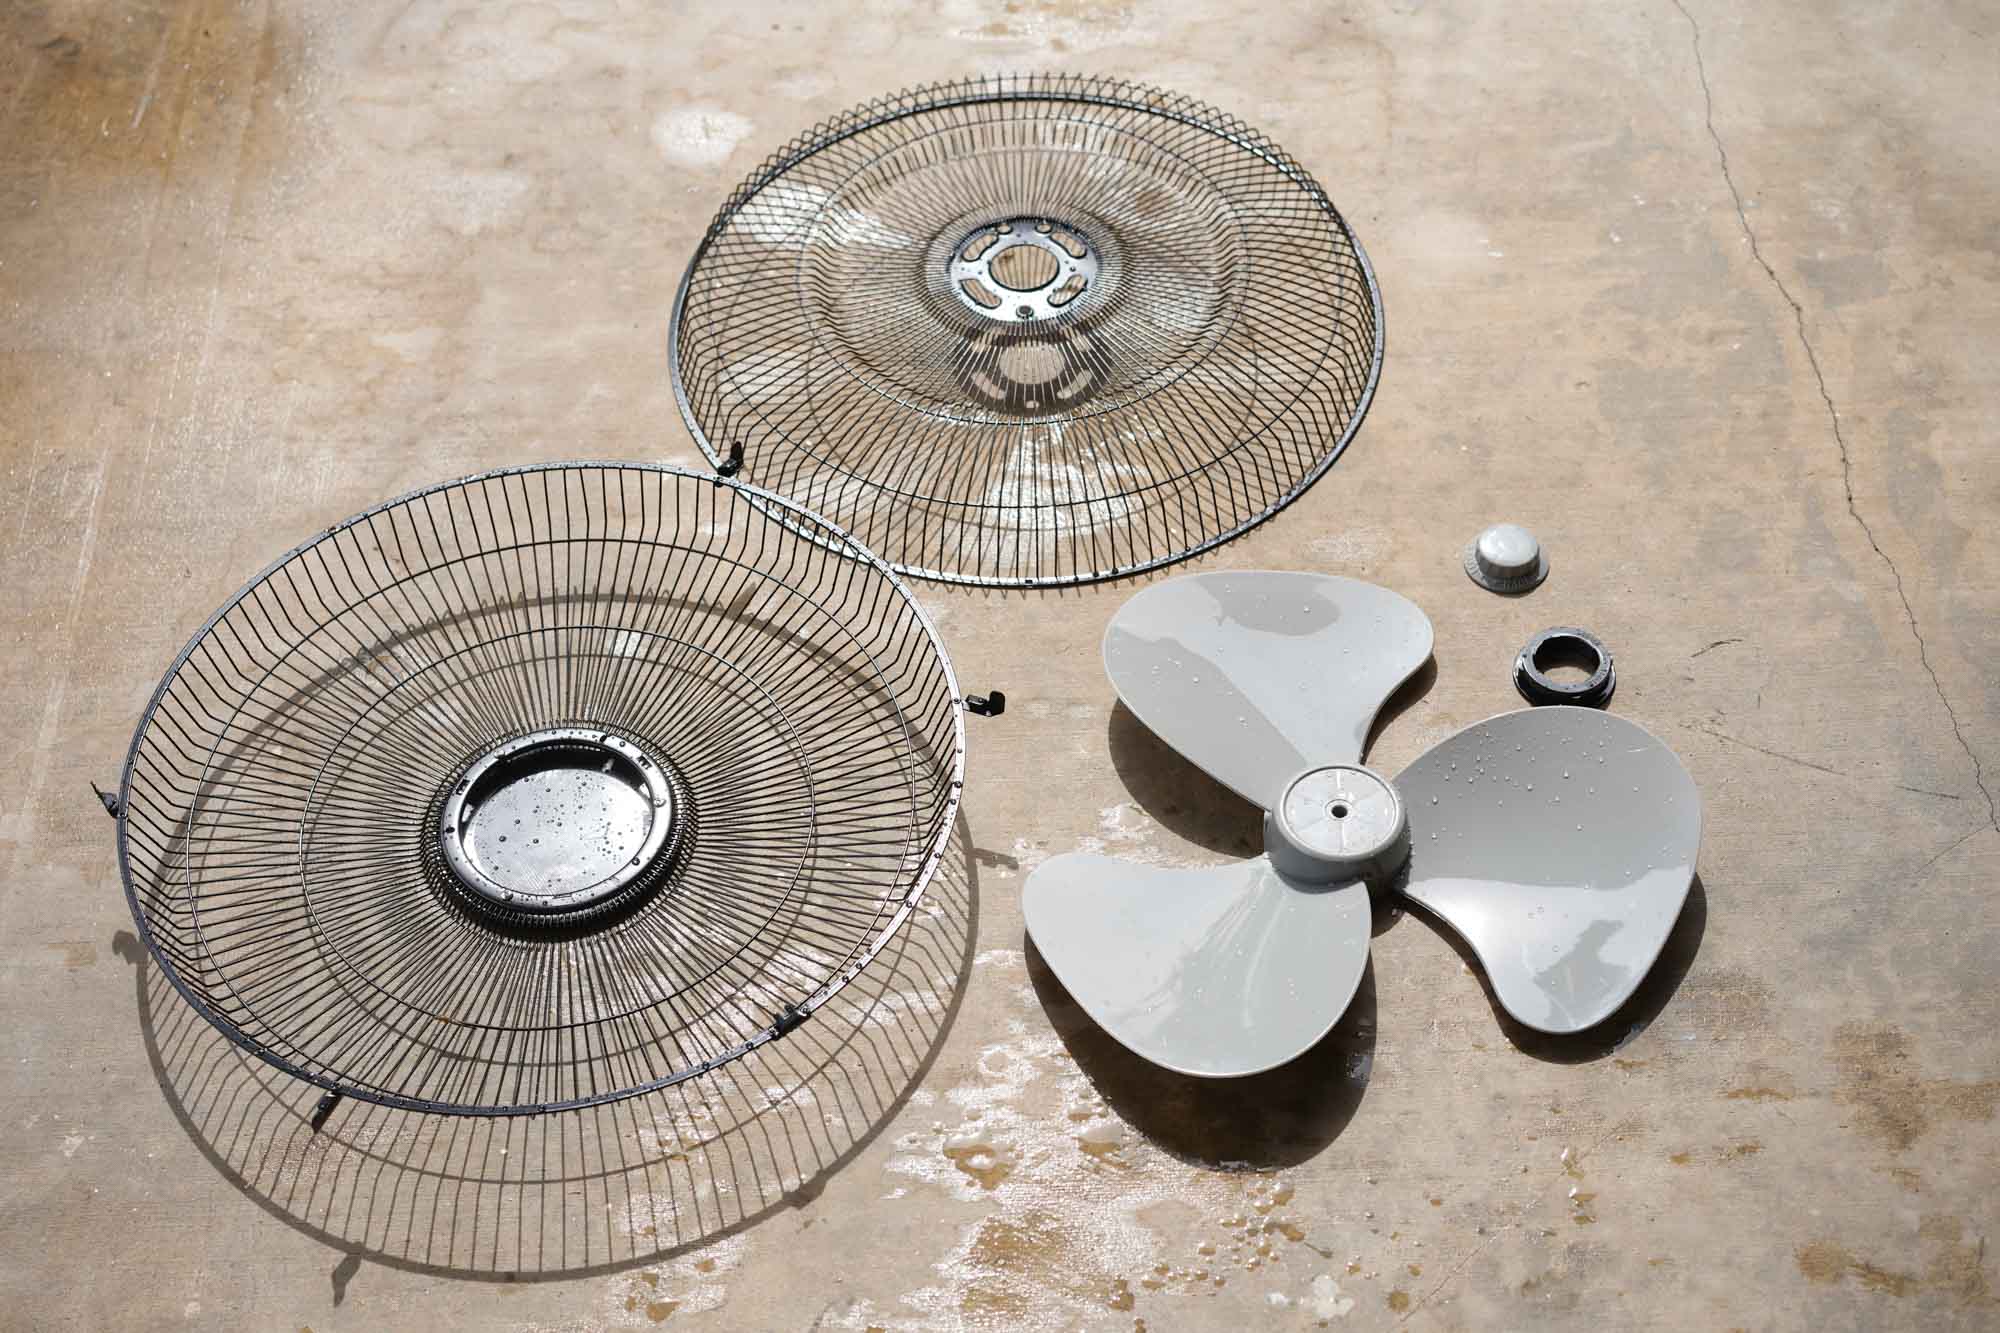 sun drying fan parts